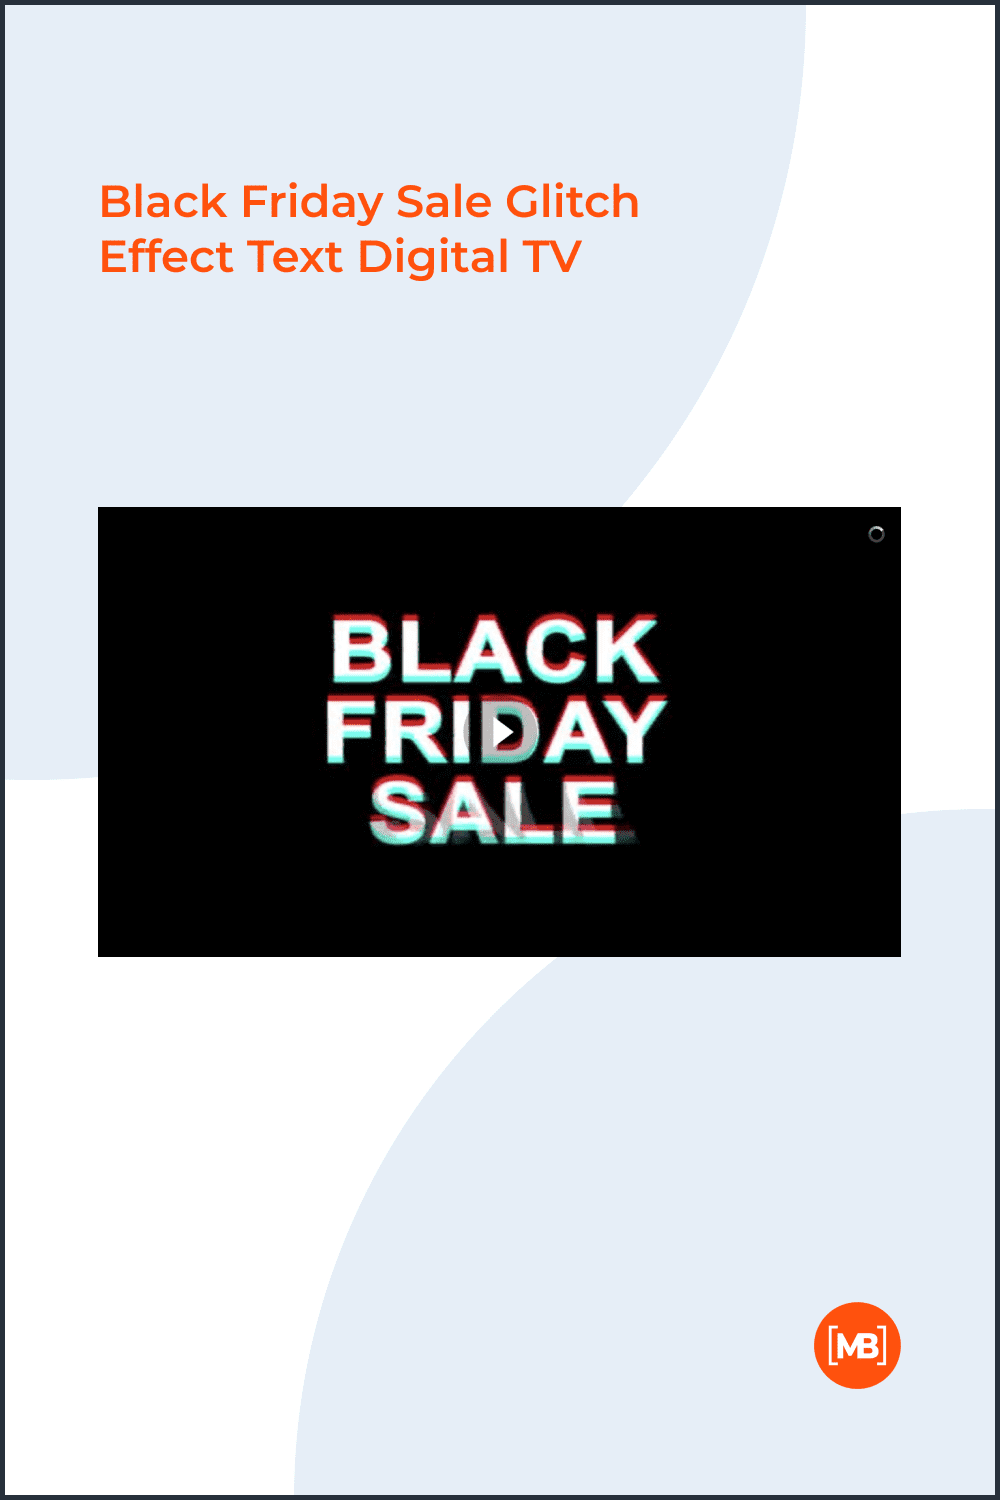 Black Friday sale glitch effect text digital TV.